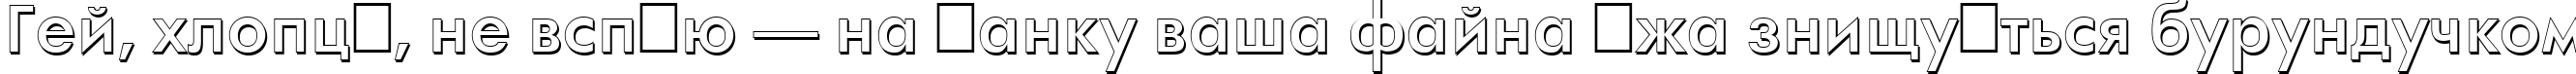 Пример написания шрифтом a_FuturaOrtoSh Bold текста на украинском